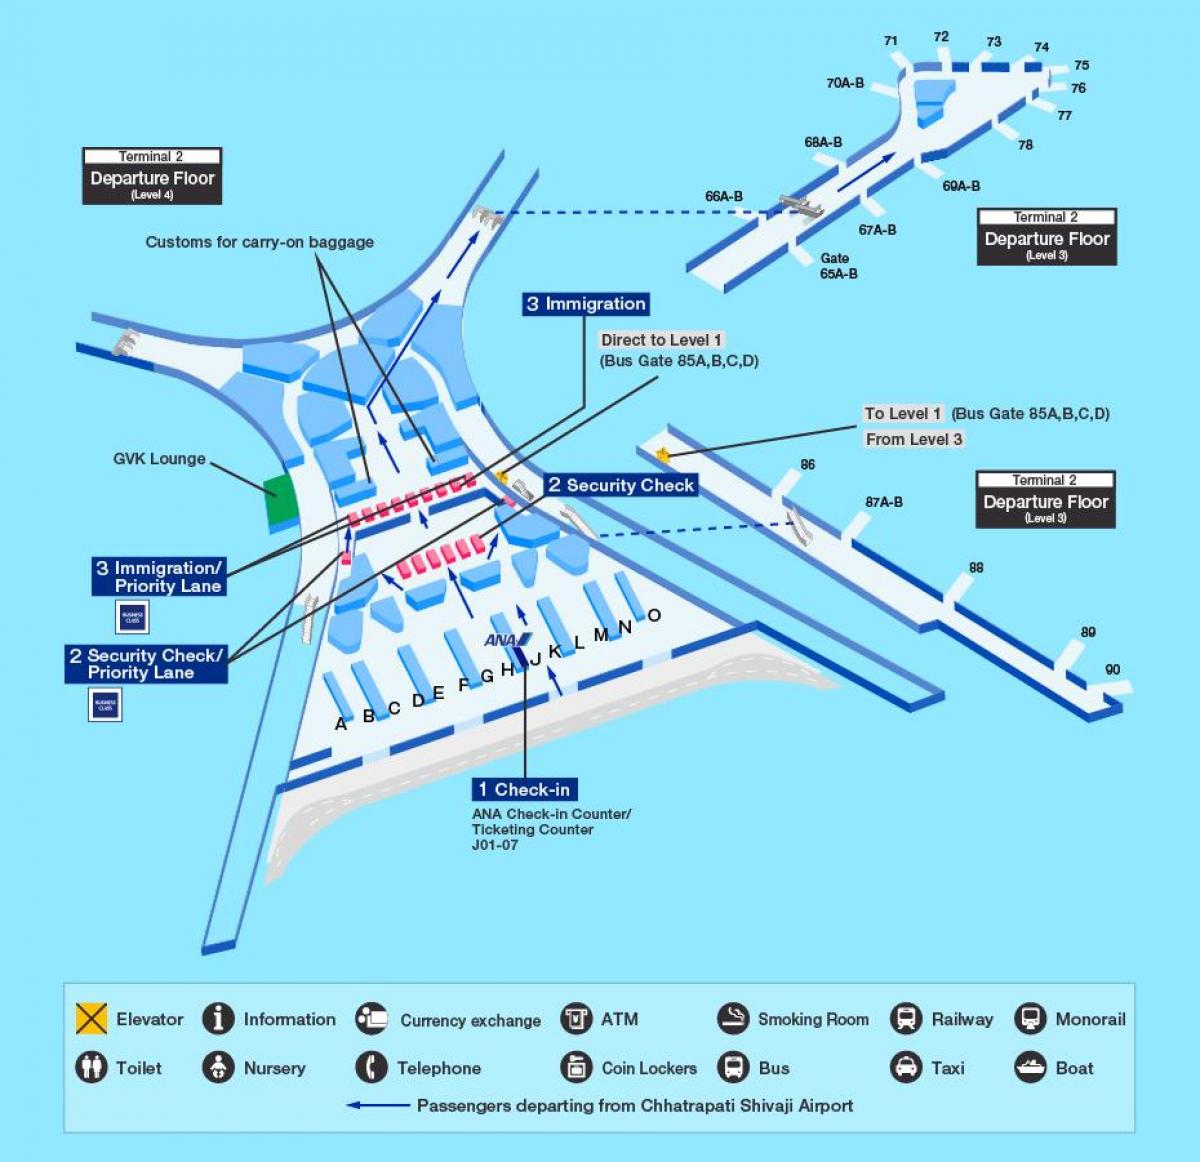 મુંબઇ ઇન્ટરનેશનલ એરપોર્ટ ટર્મિનલ 2 નકશો